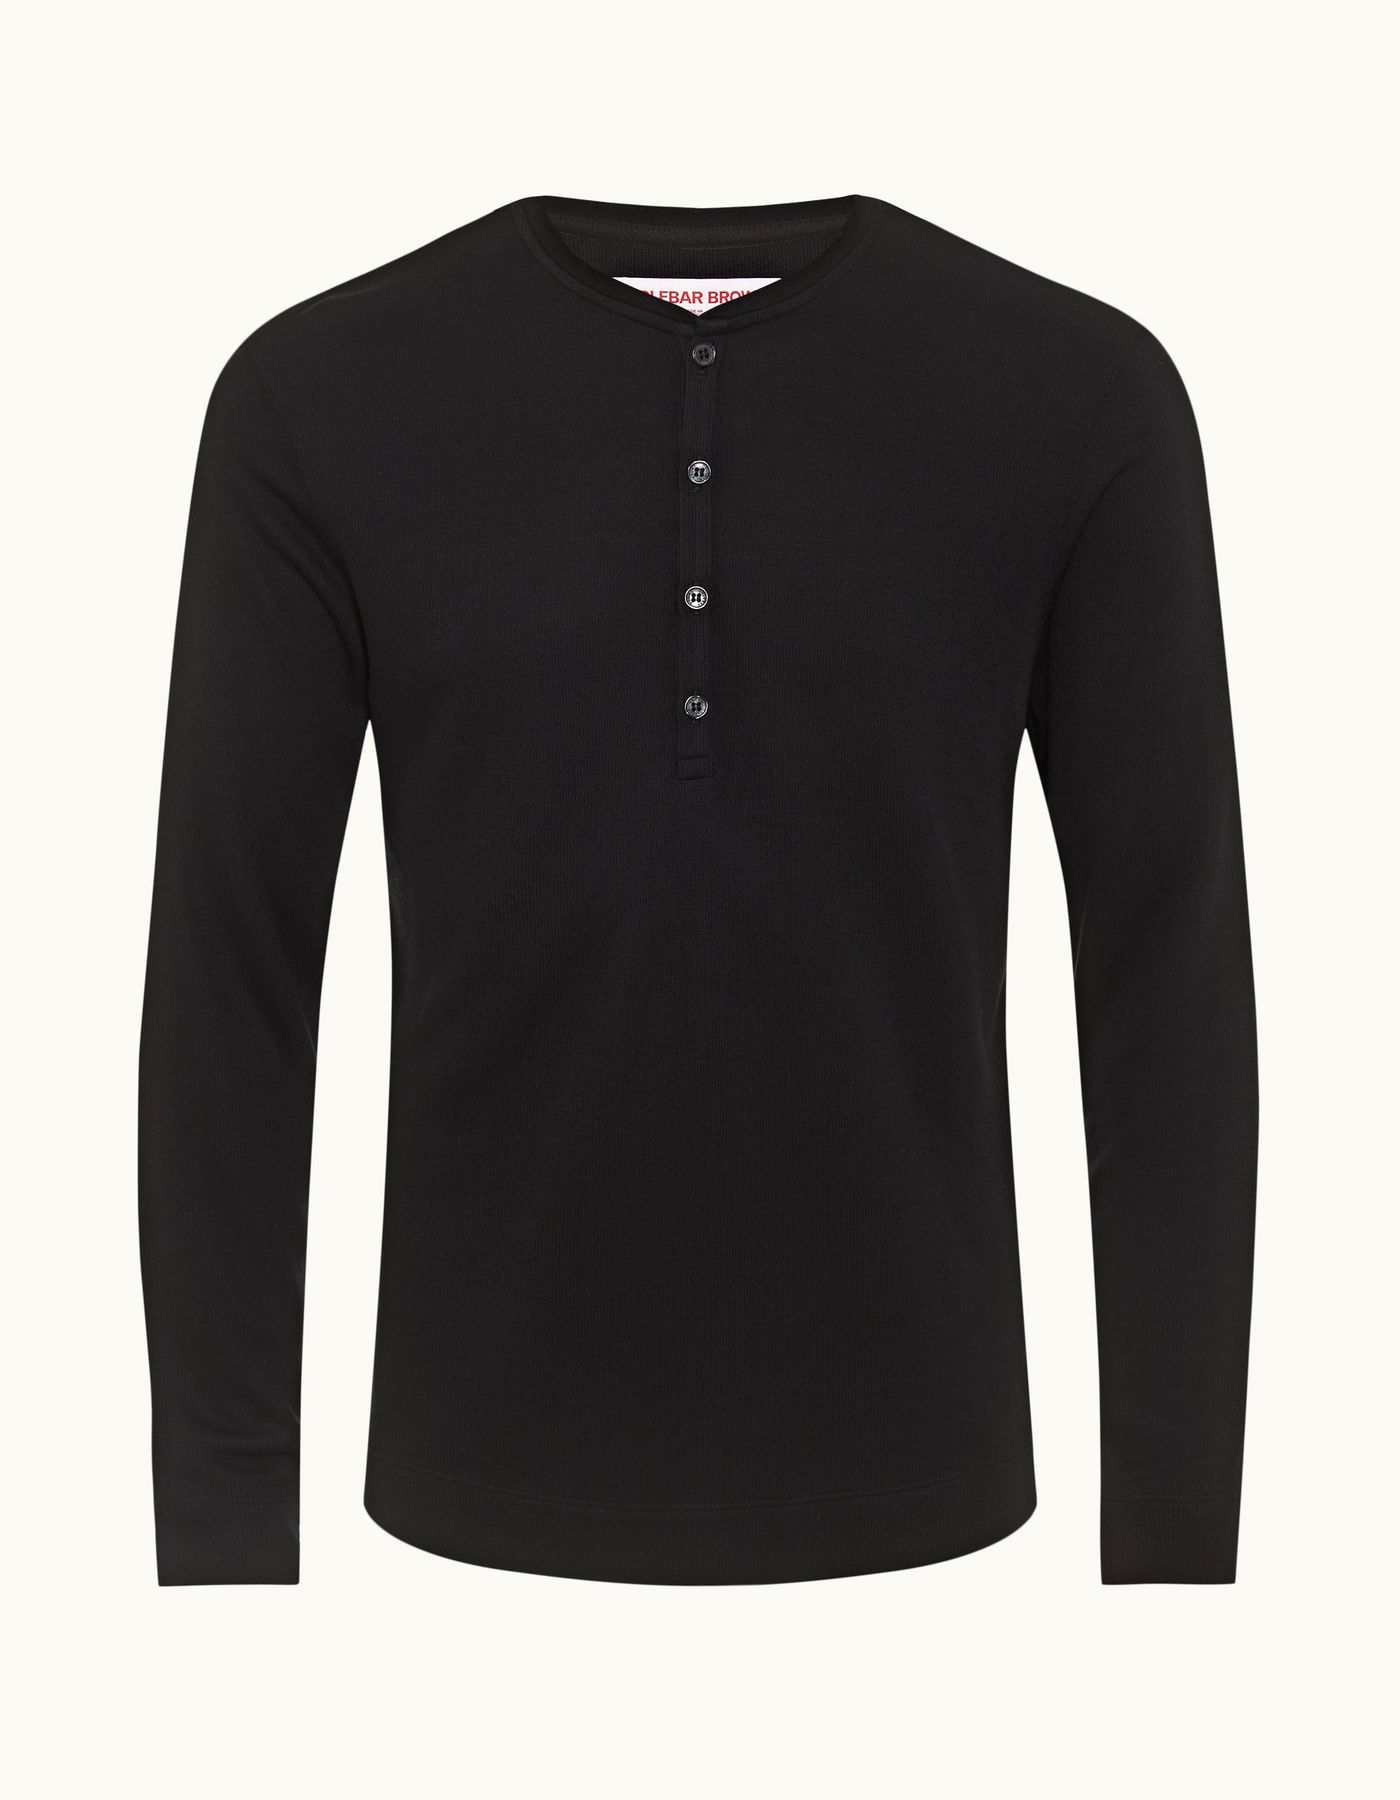 Harrison Cashmere - Mens Black Classic Fit Modal-Cashmere T-shirt